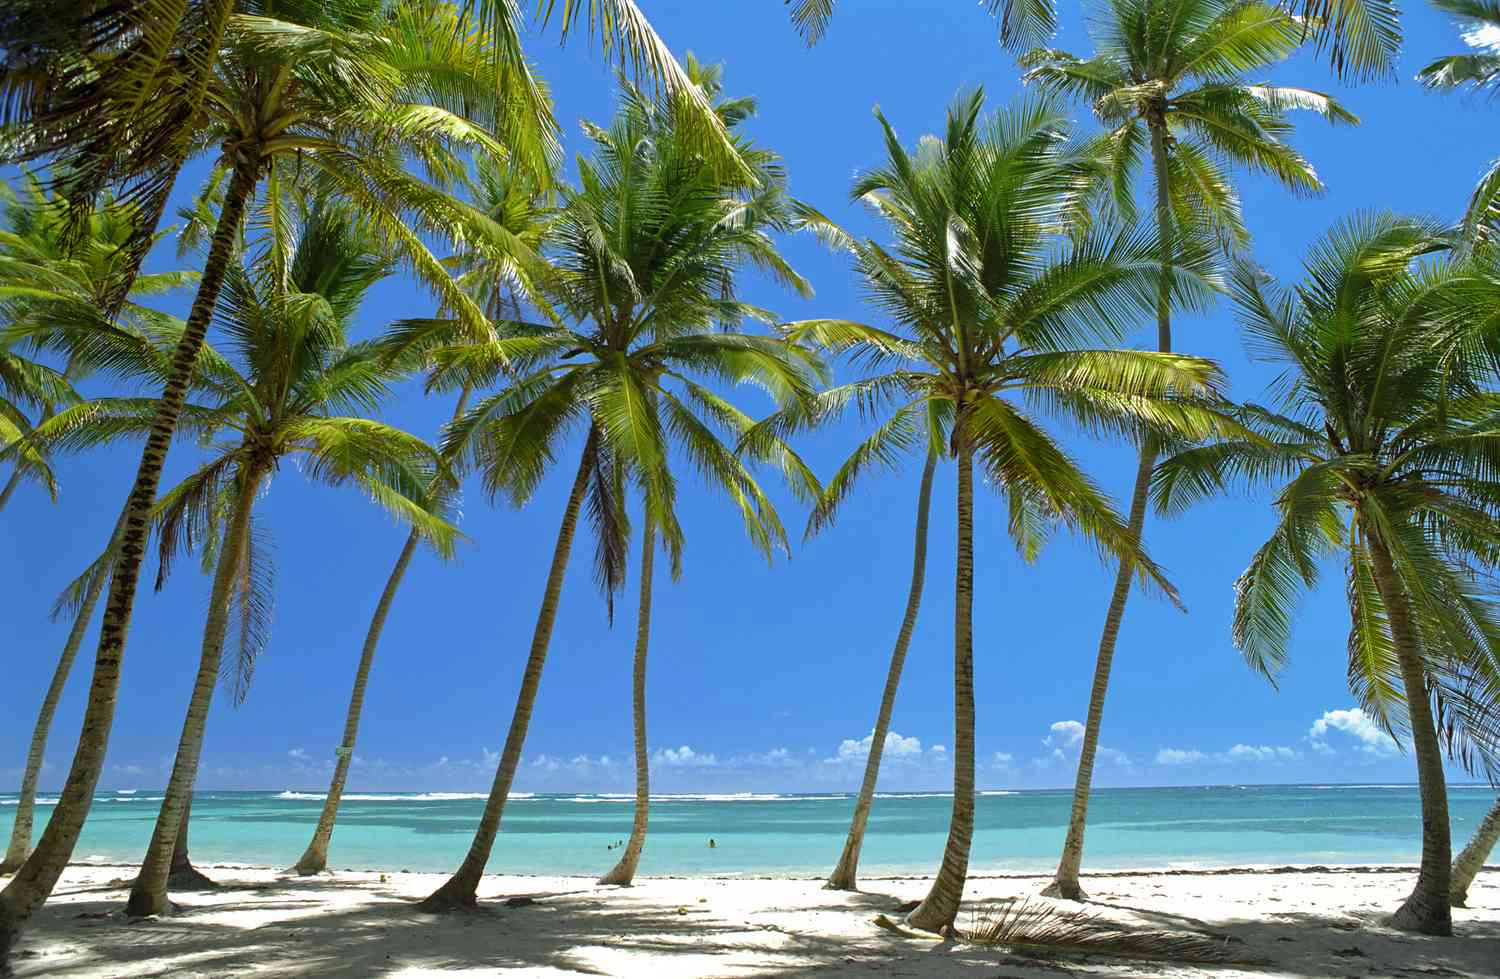  Martinica  strand - Brač-sziget